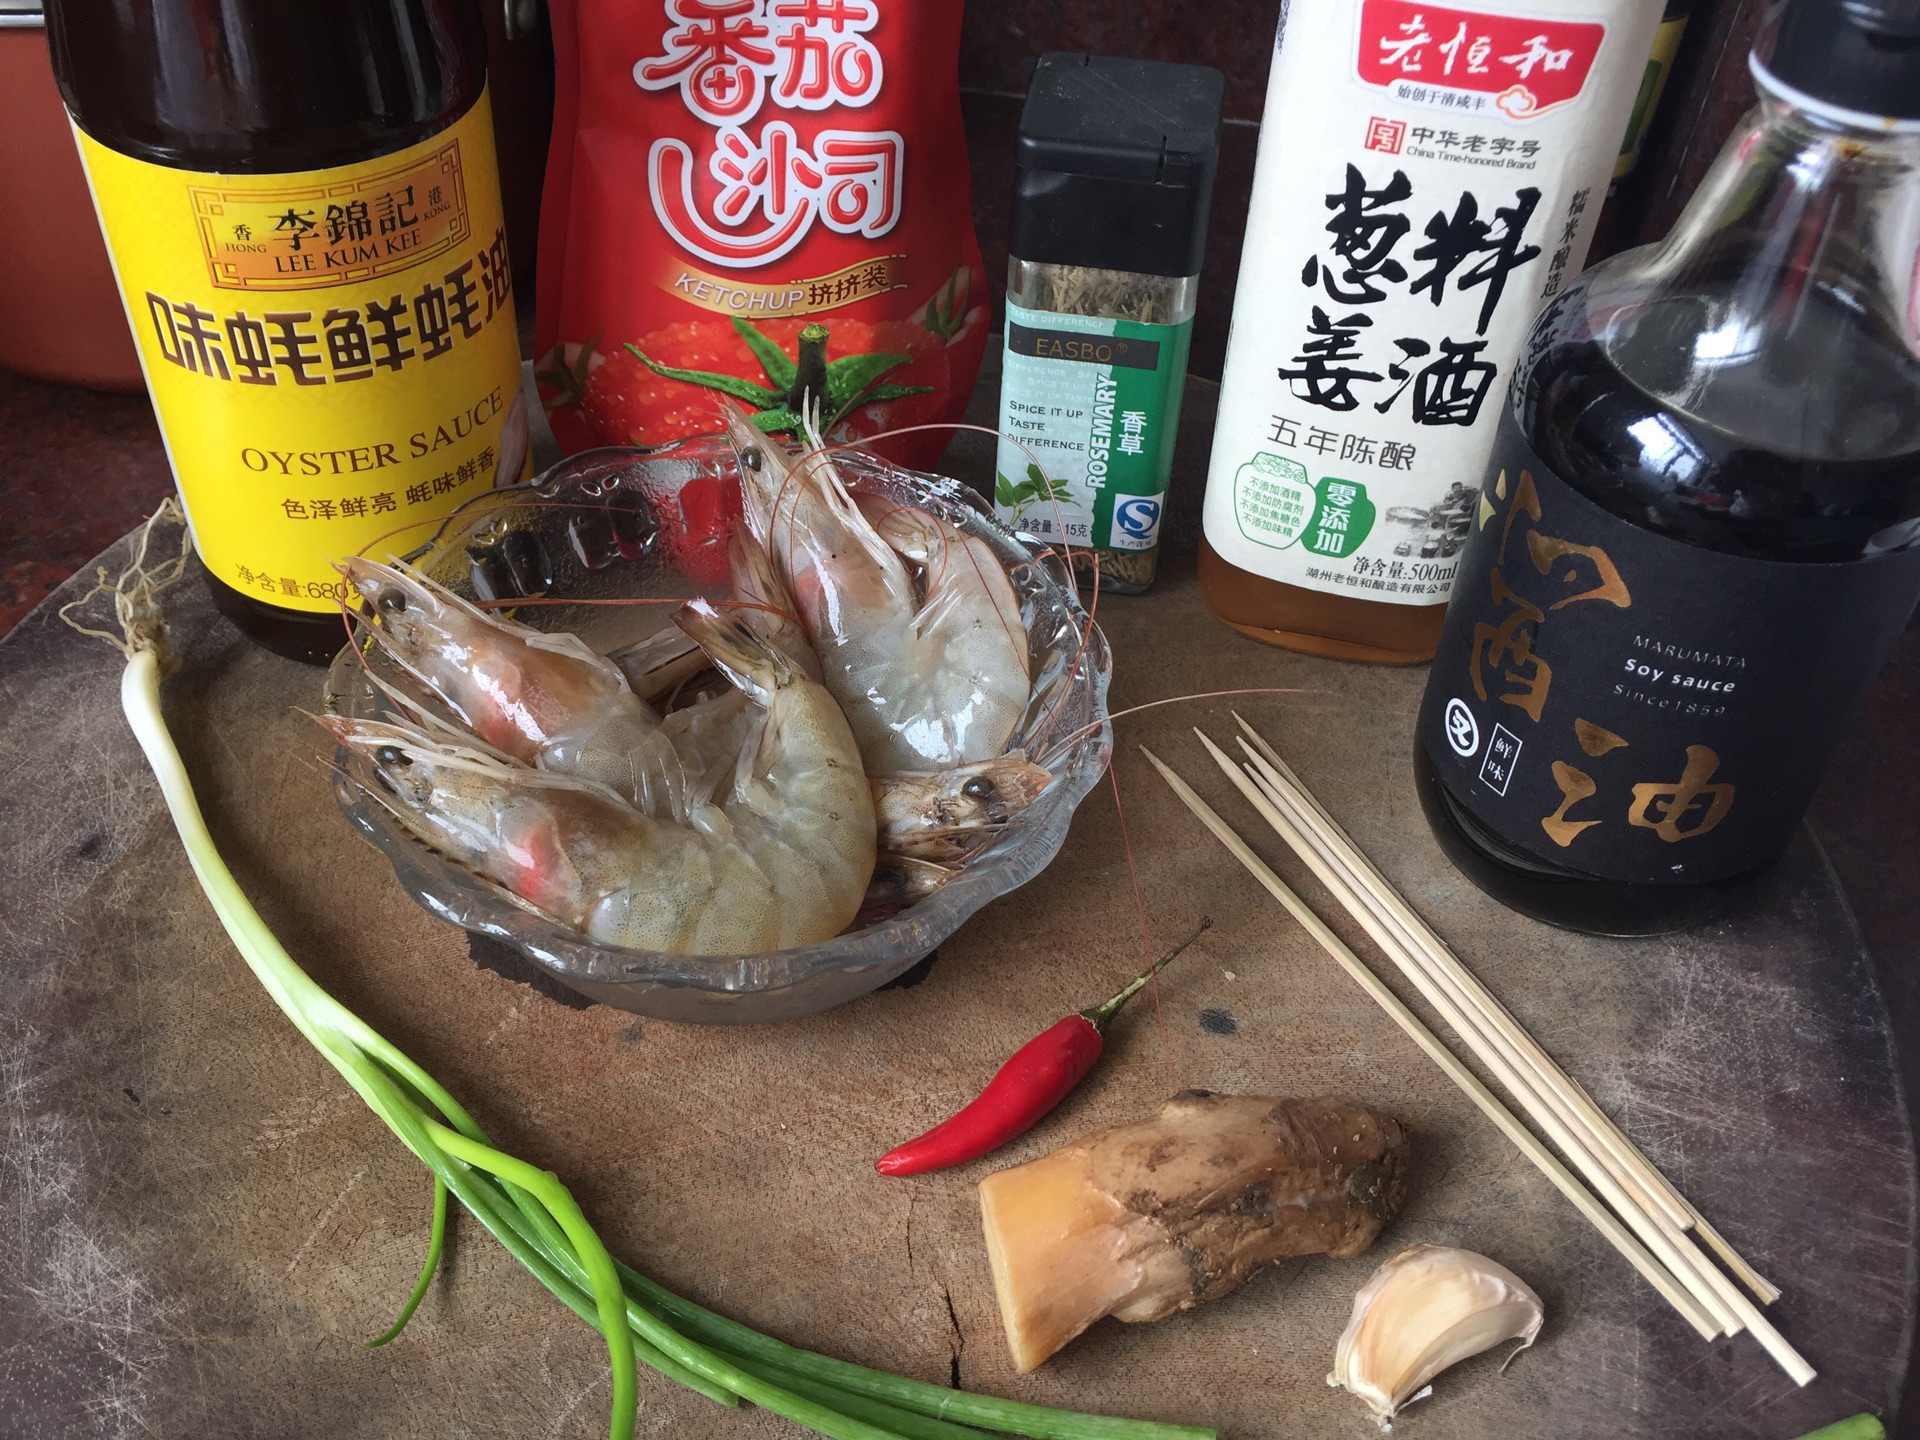 红亮诱人的爆香竹签虾,鲜香扑鼻~5分钟就能做大餐!_超级大虾_美食图片